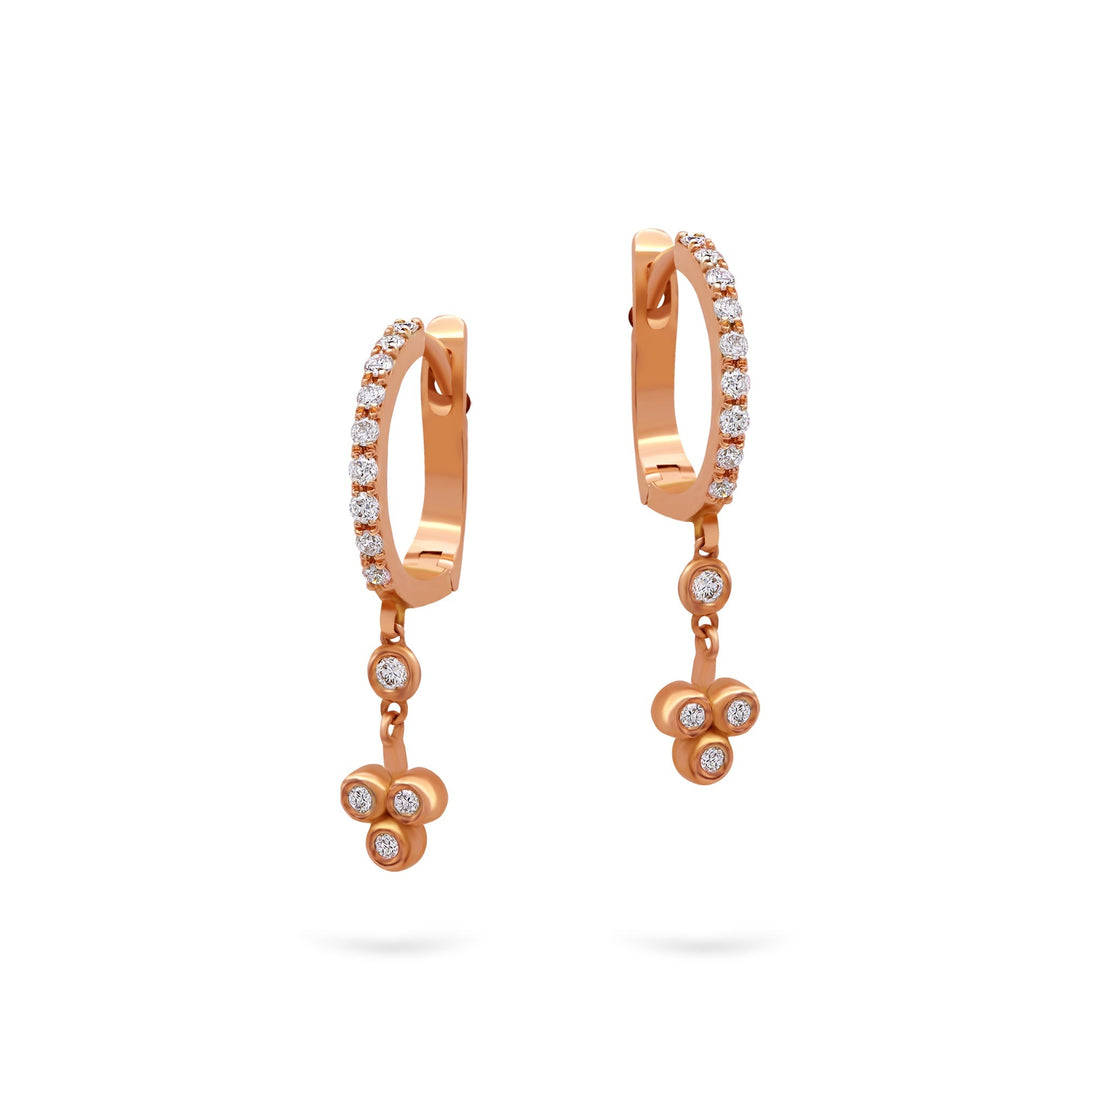 Jewelry Spades | Diamond Earrings | 0.26 Cts. | 18K Gold - Rose / Pair / Diamonds - earring Zengoda Shop online